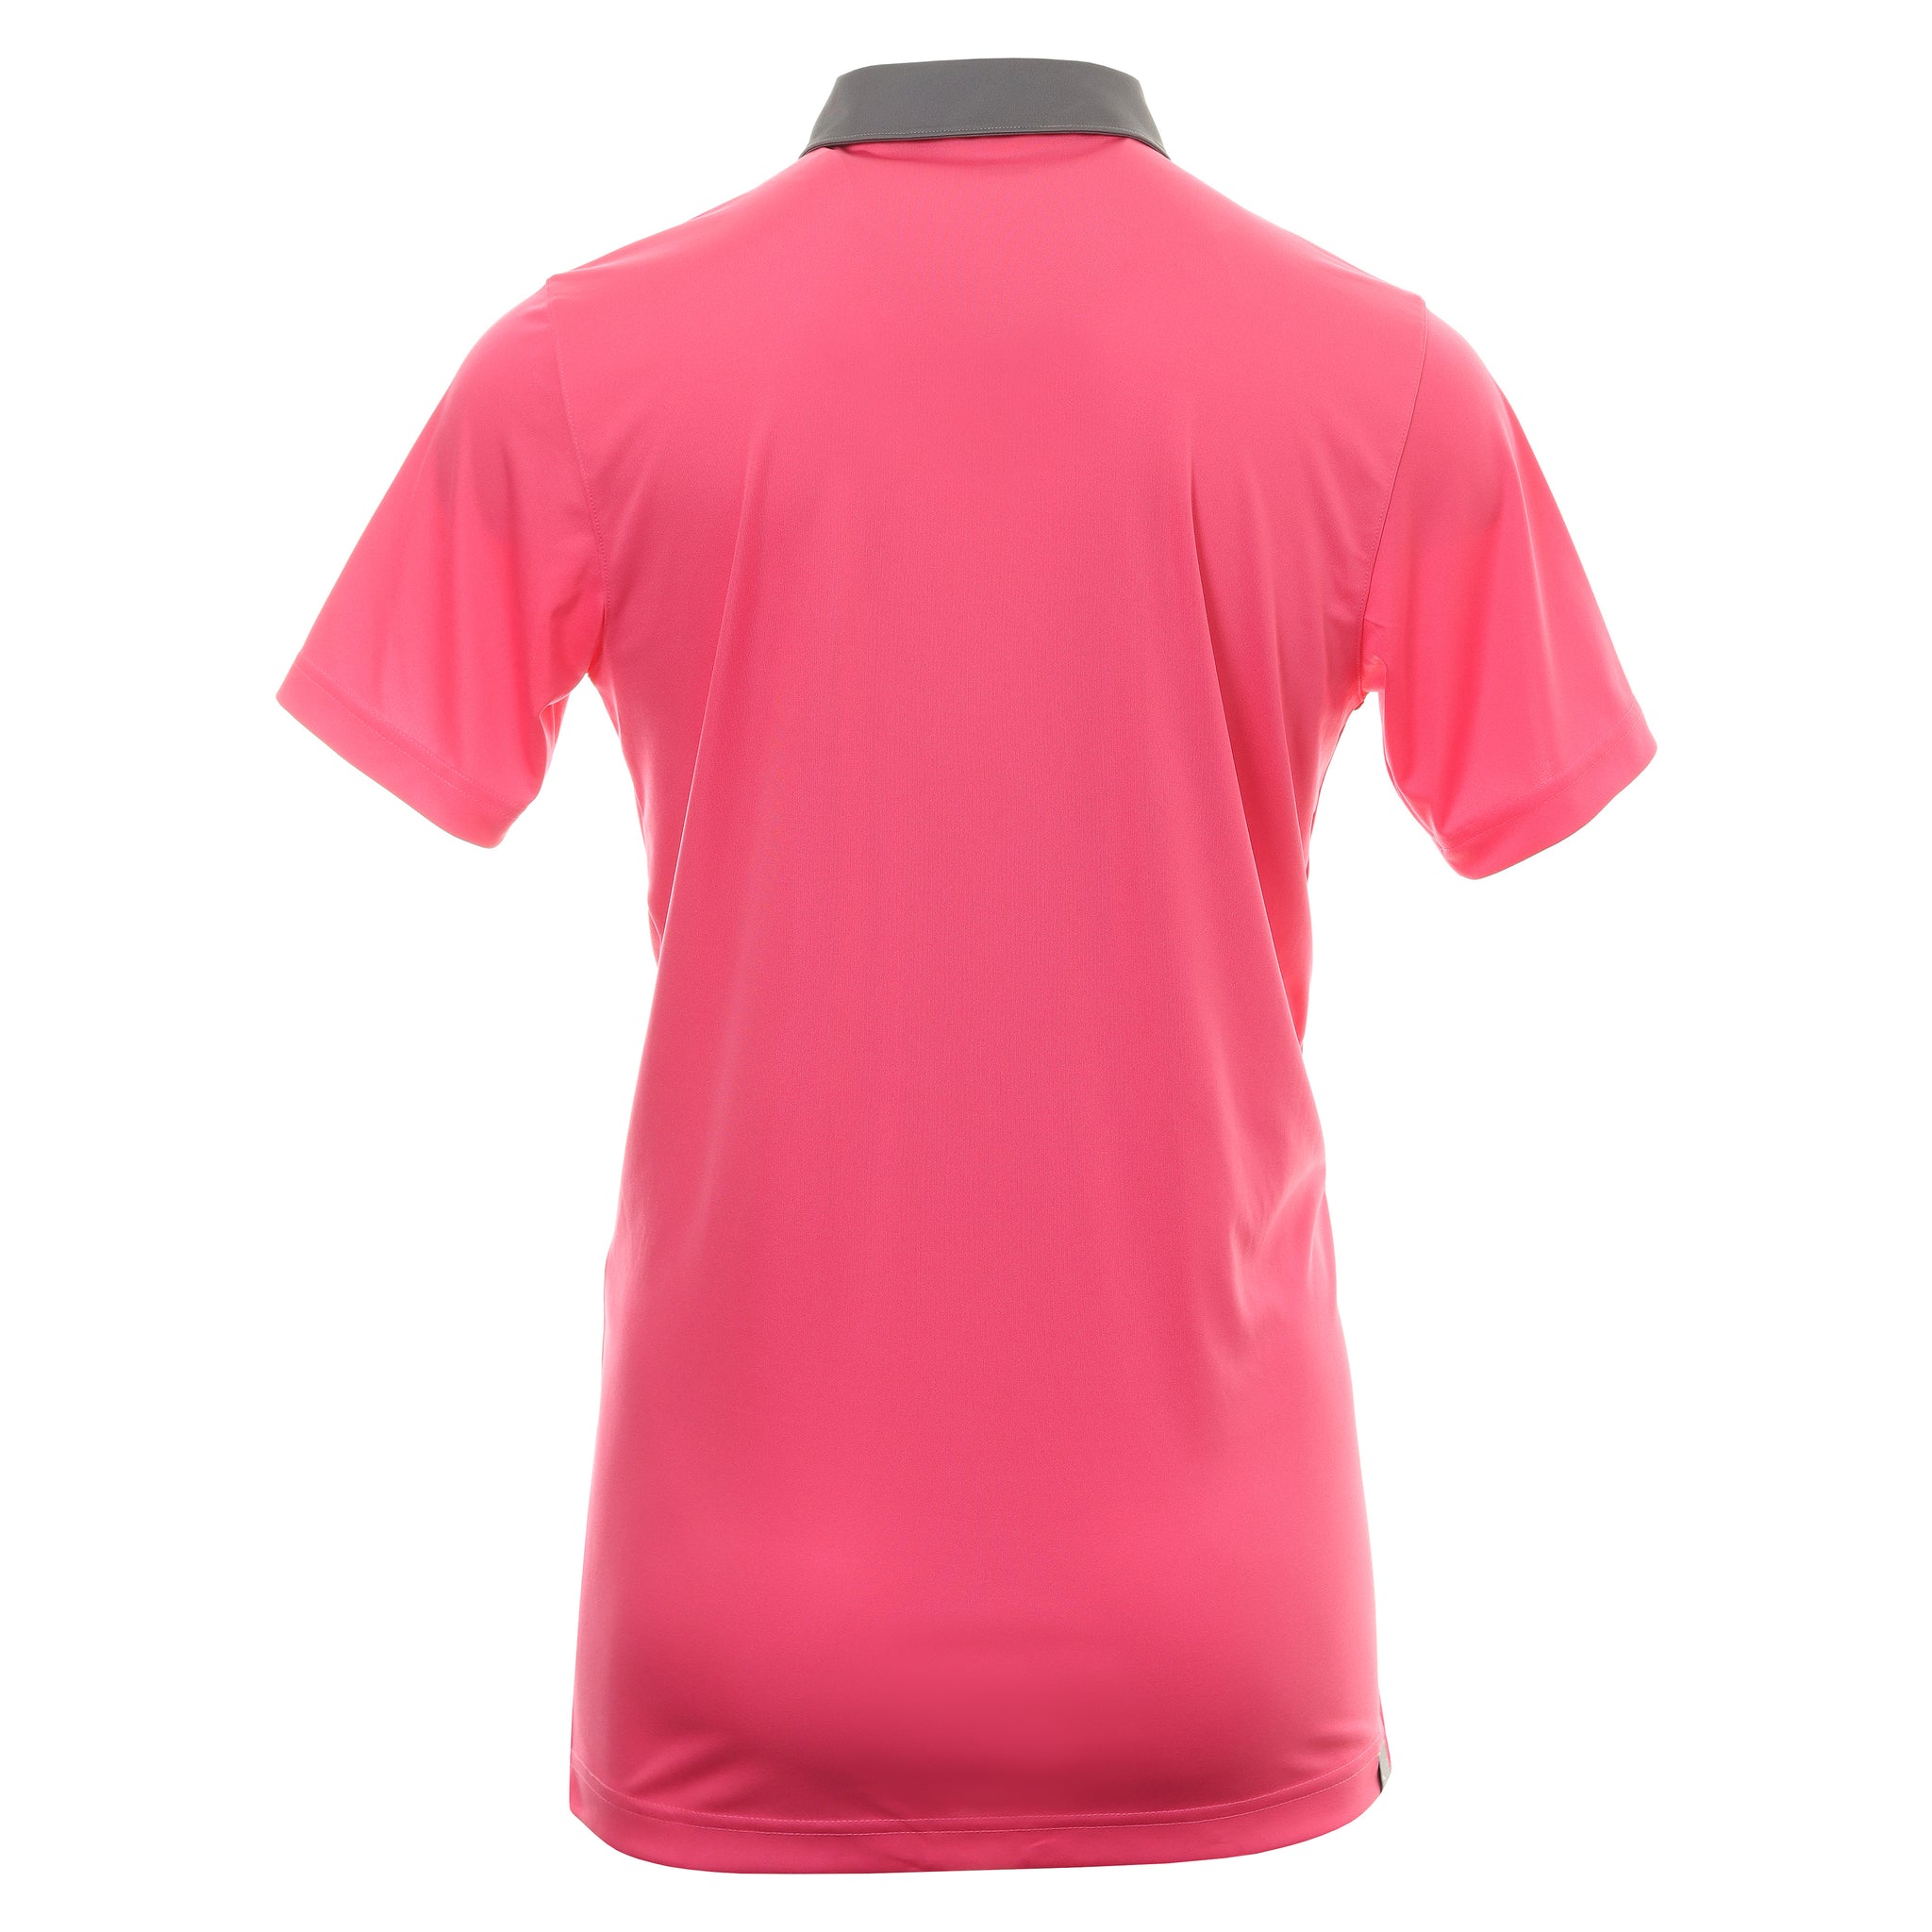 Puma Golf Gamer Polo Shirt 599118 Sunset Pink Quiet Shade 26 ...